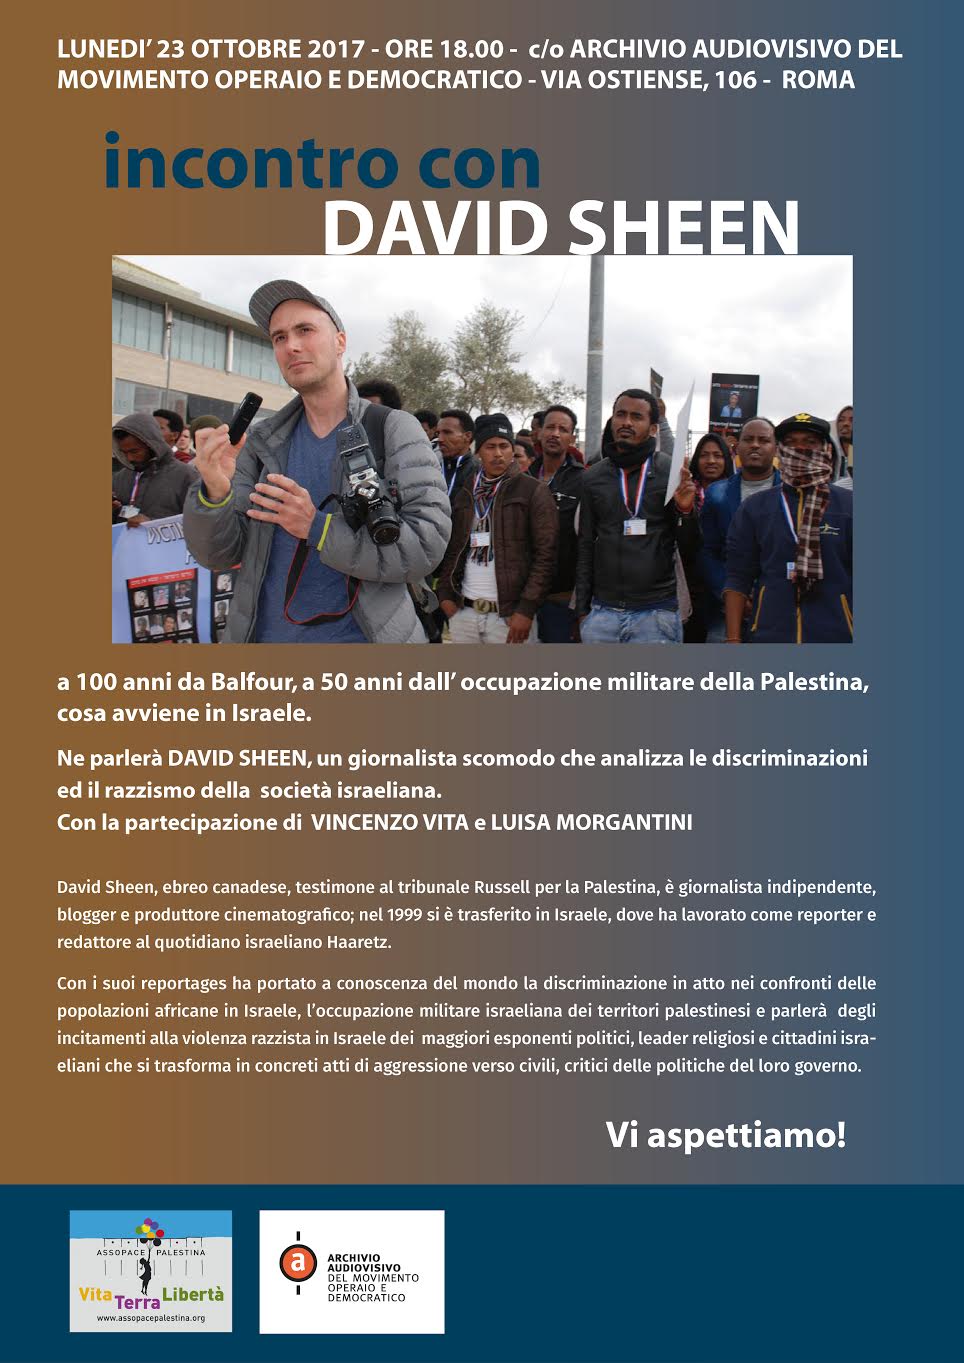 Roma, 23 ottobre: incontro con il giornalista David Sheen.